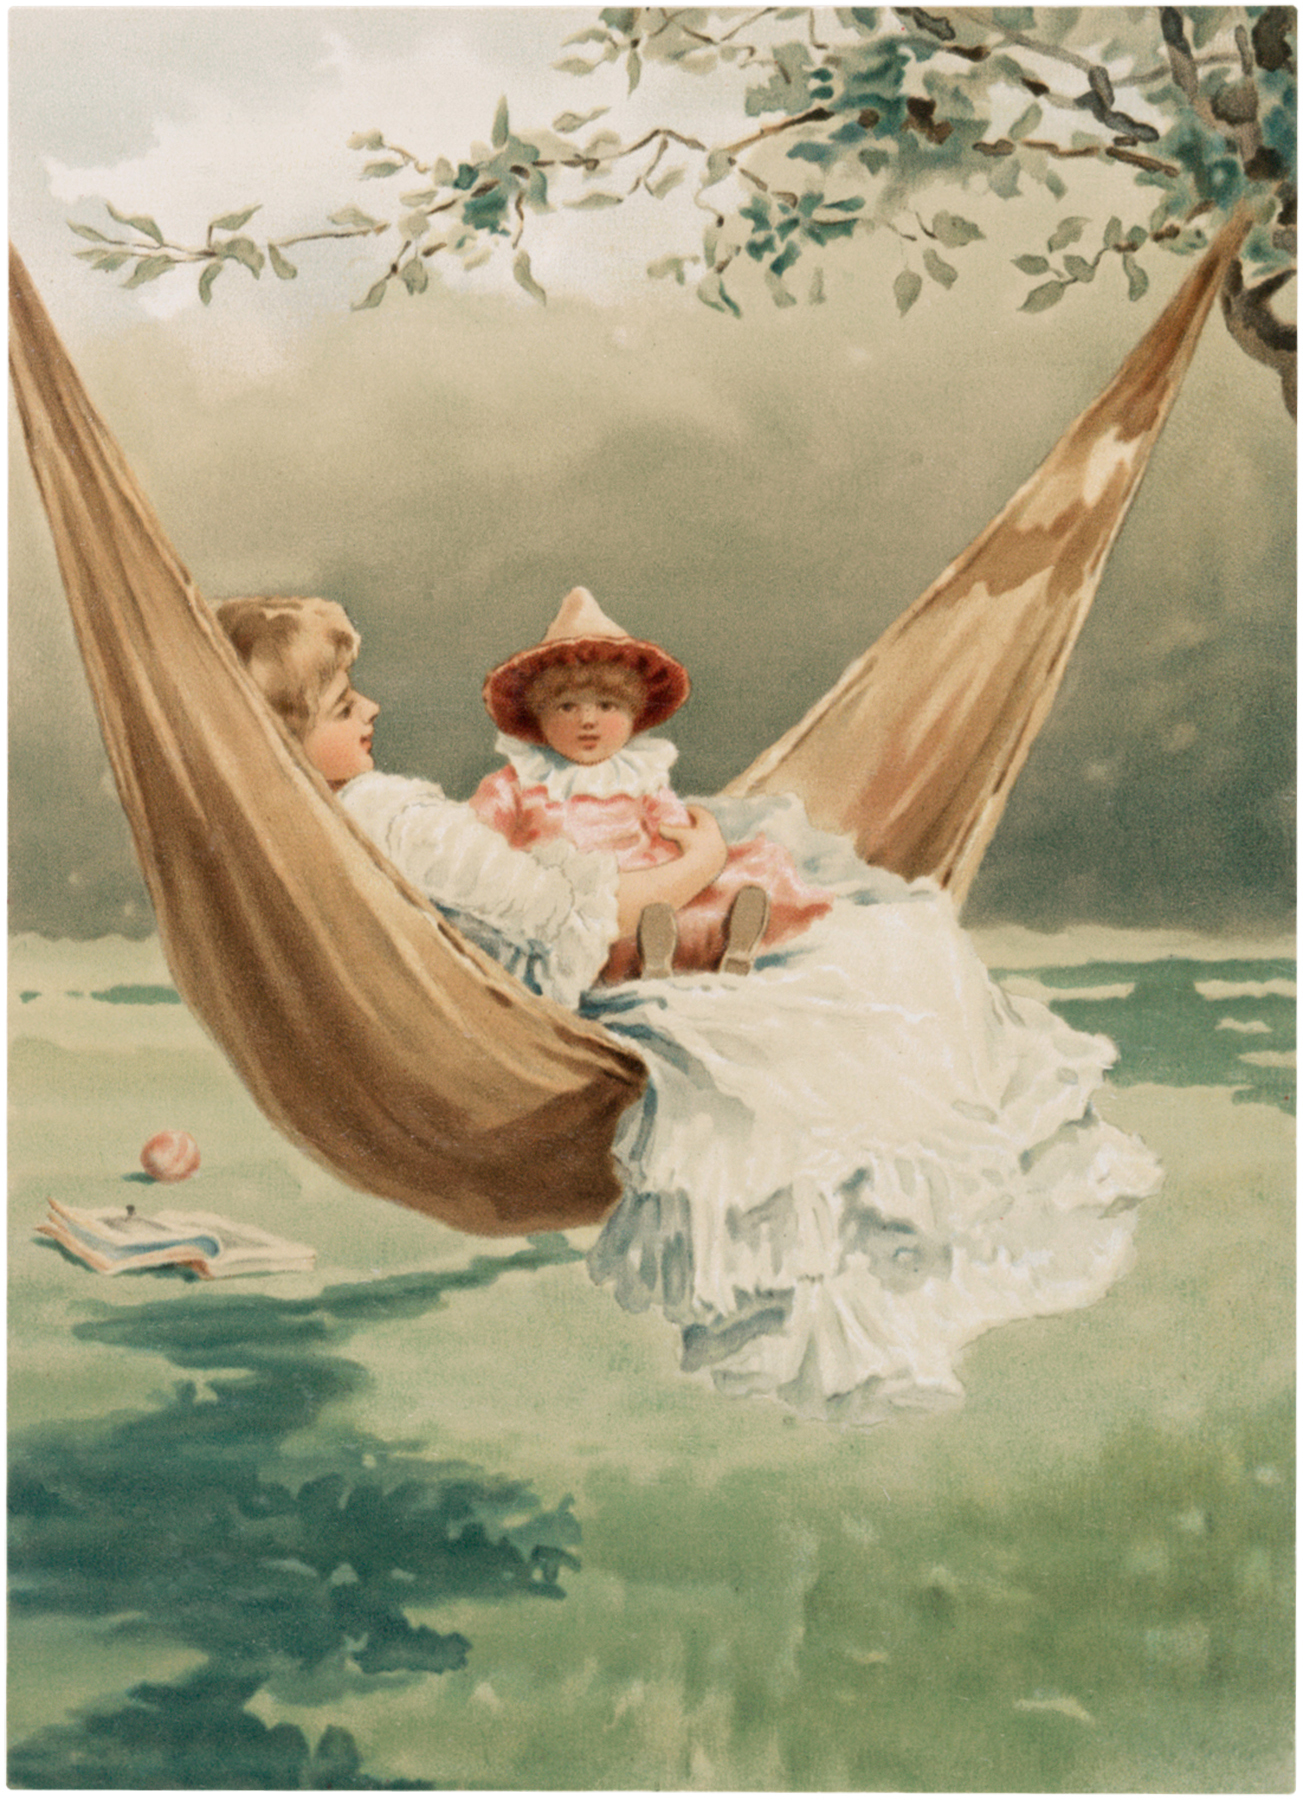 Vintage hammock images